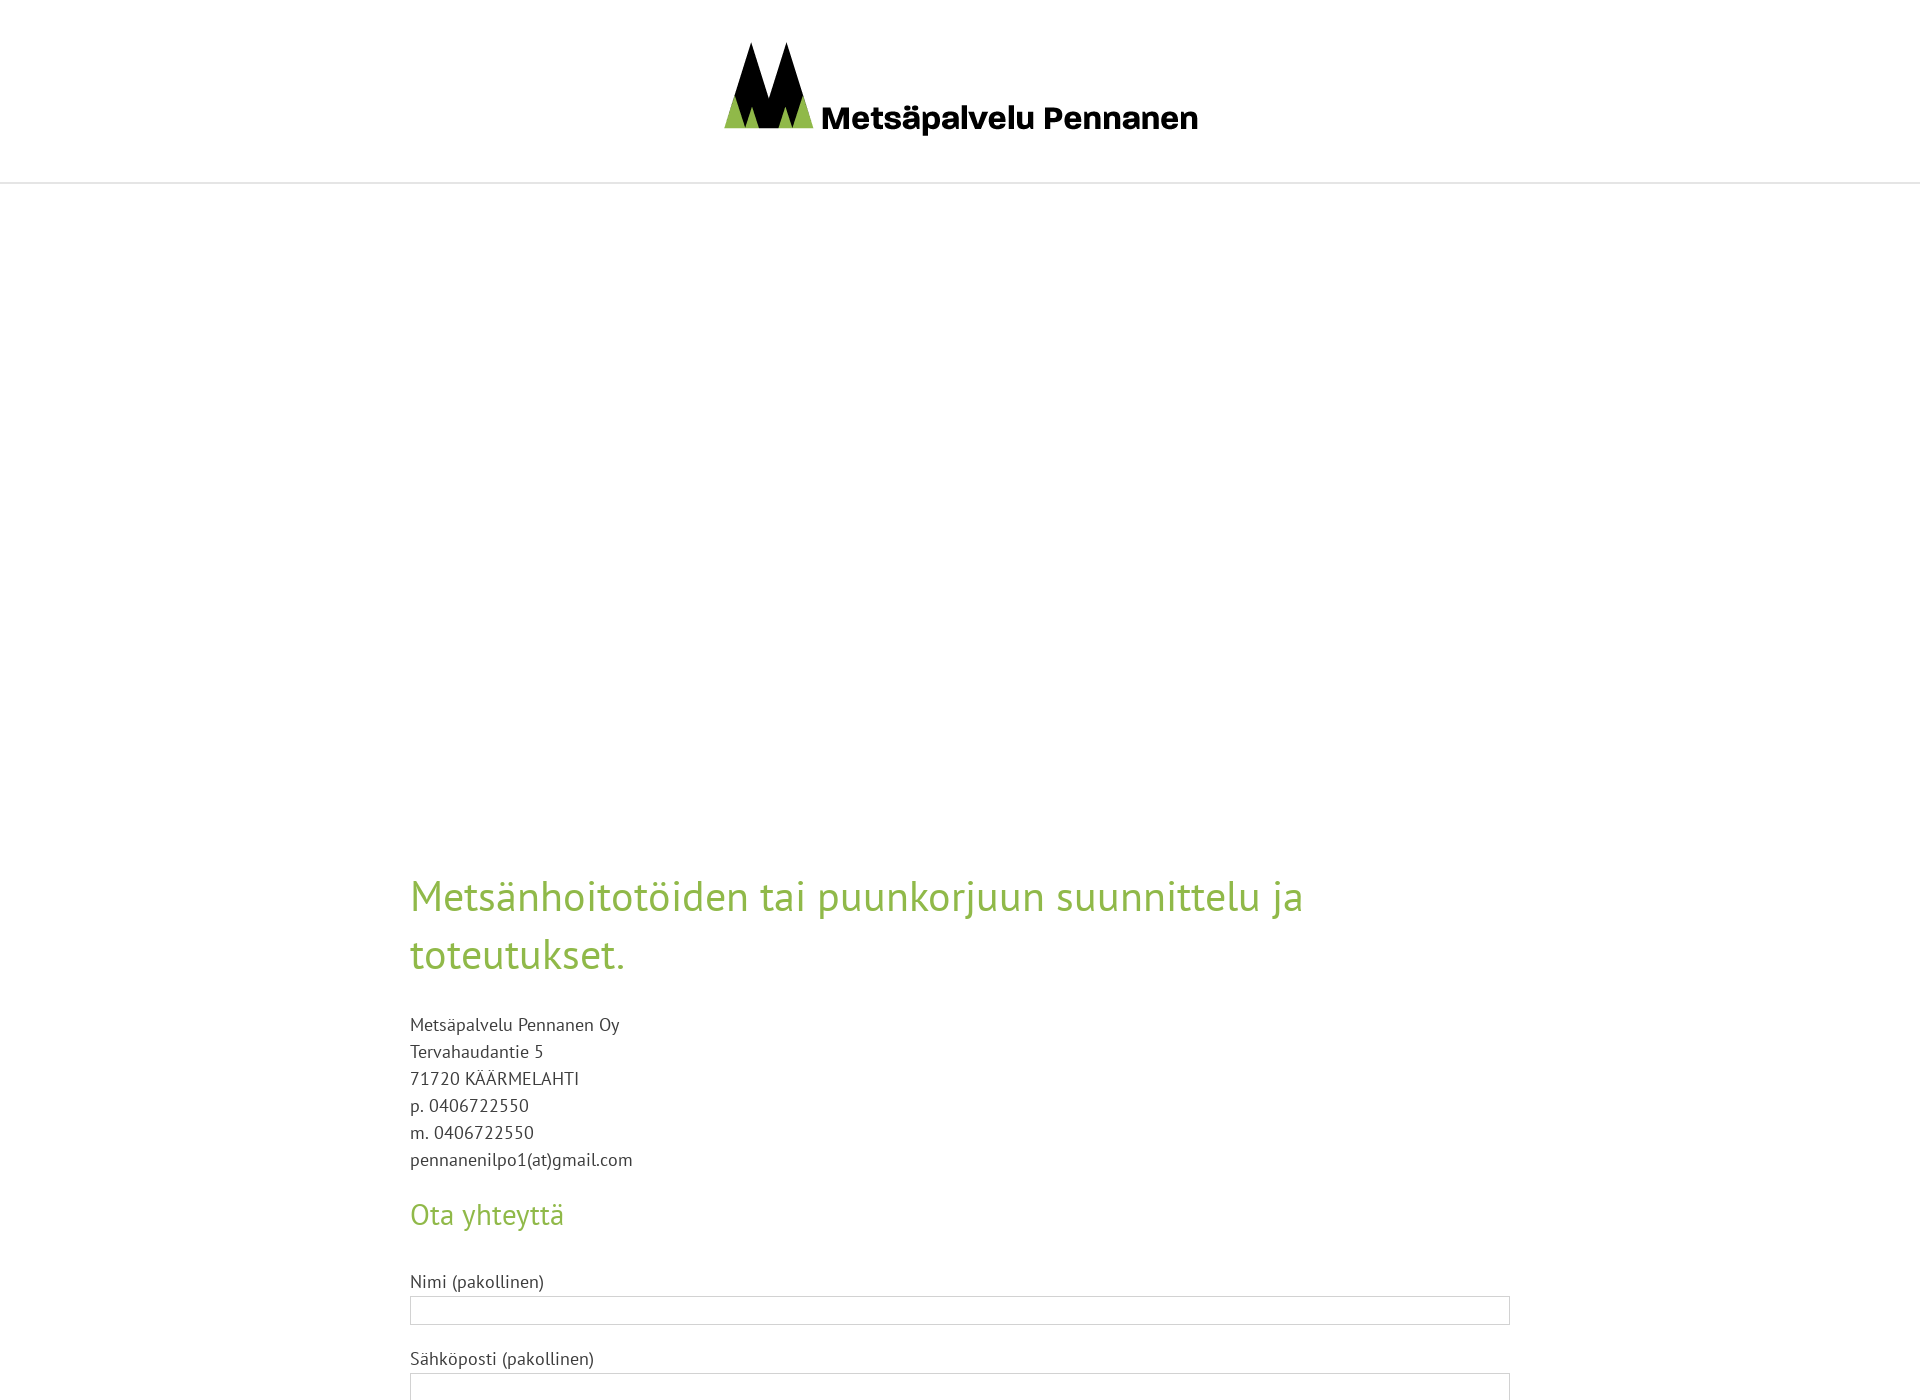 Screenshot for metsapalvelupennanen.fi